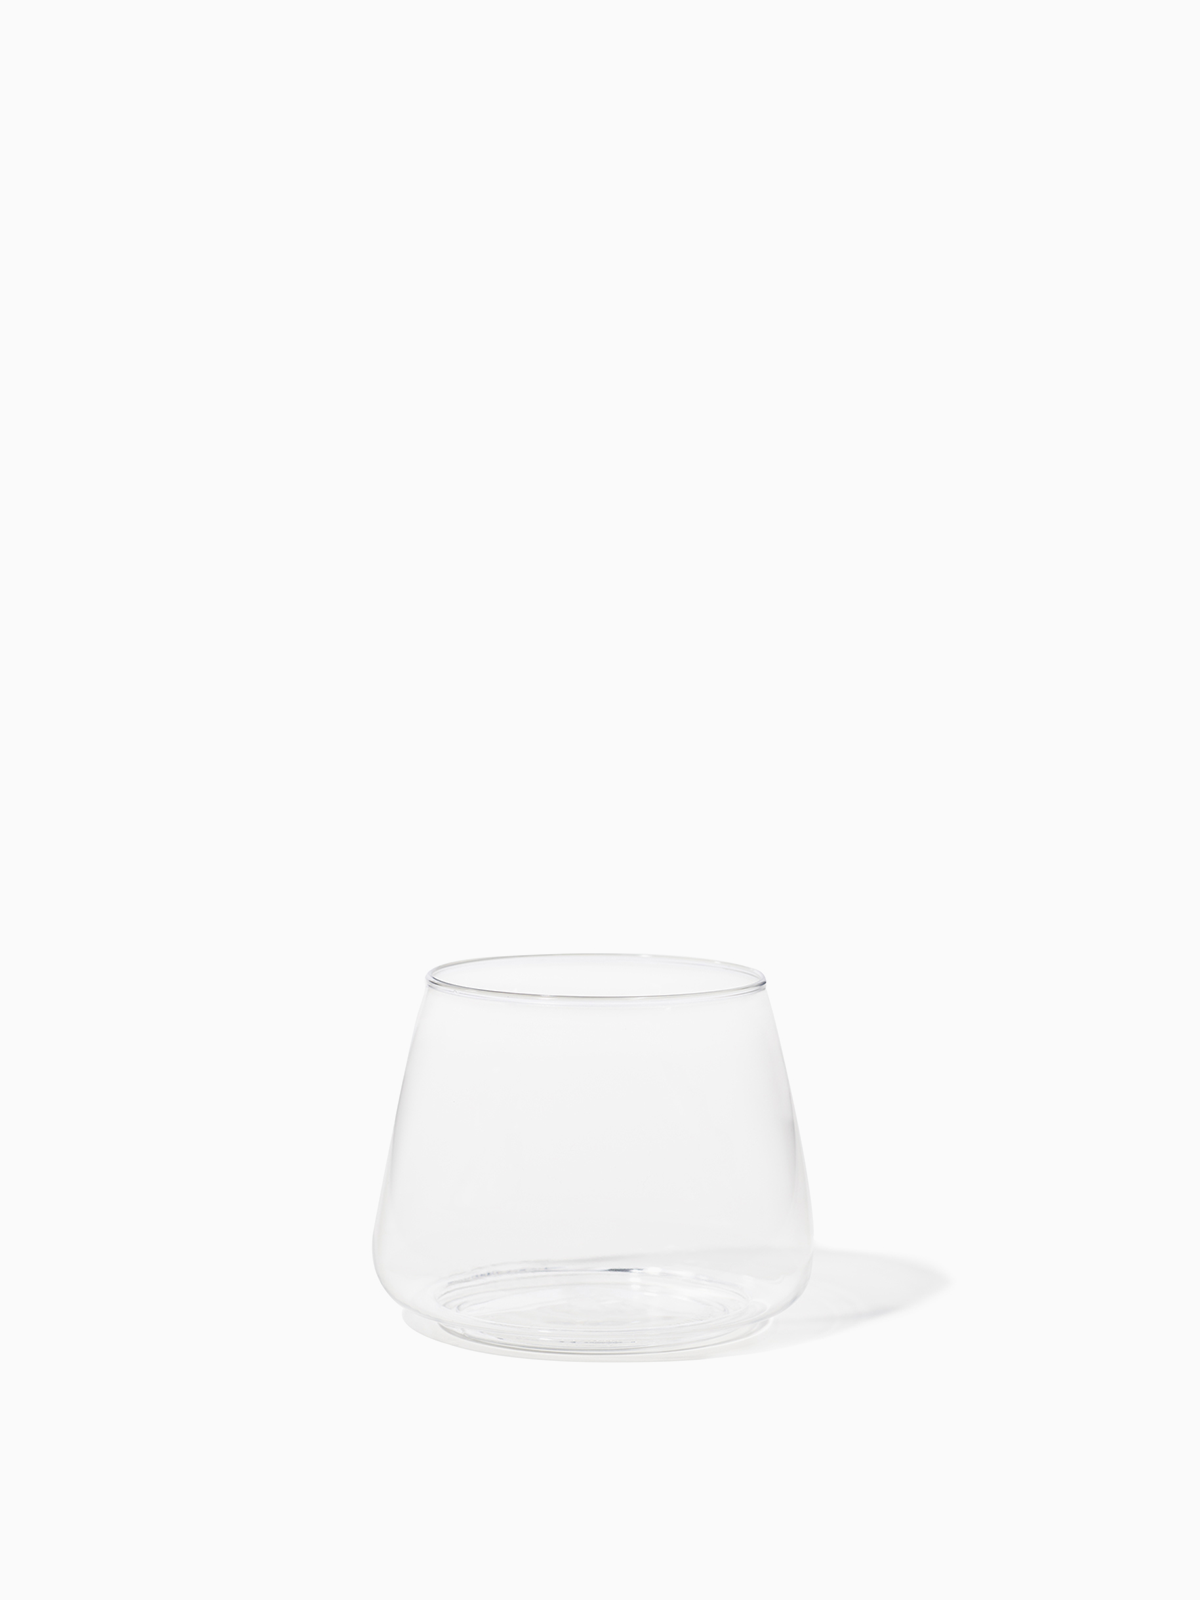 JGIRL unbreakable Plastic Drinking Glasses [Set of 6] Shatterproof